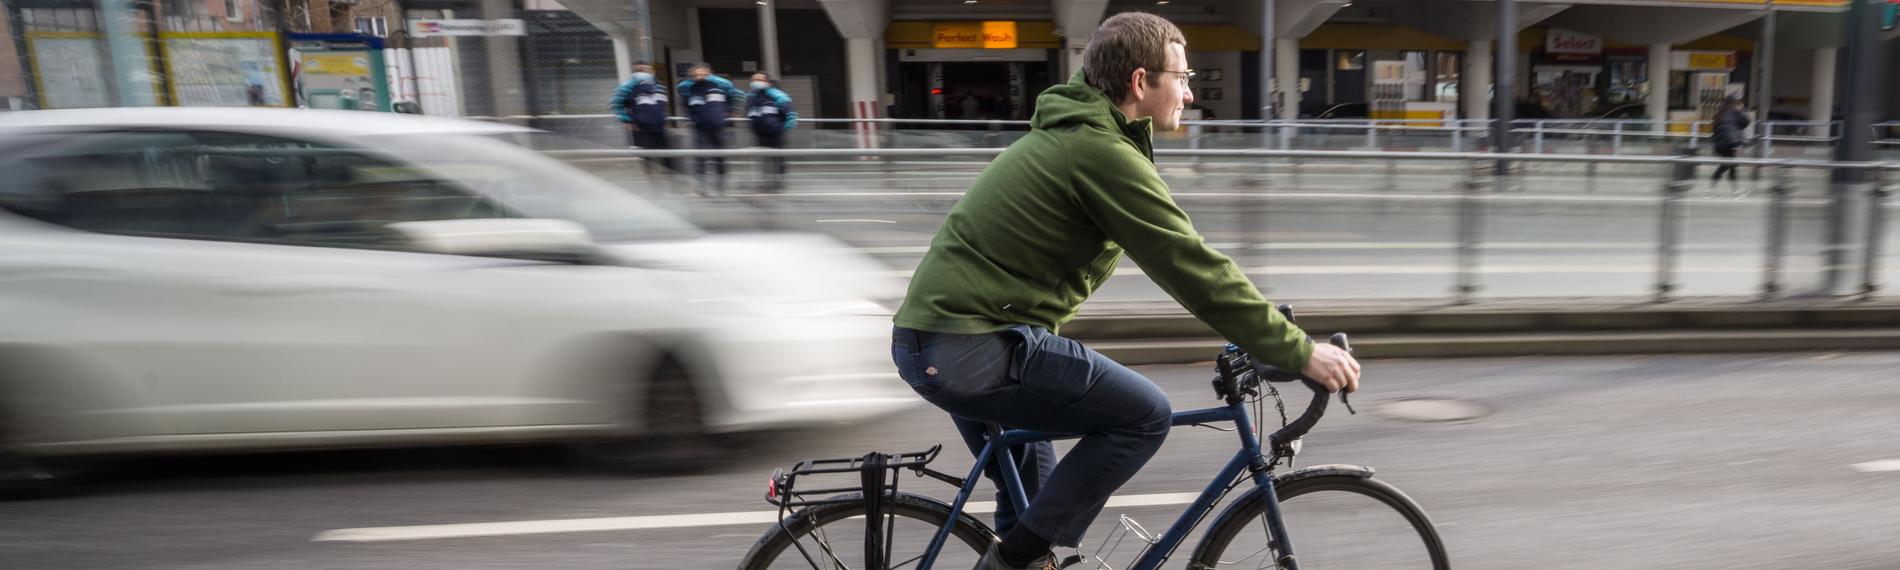 Fahrradfahrer auf Fahrradweg neben Autos,aufgenommen am 02.02.2022 in frankfurt am Main